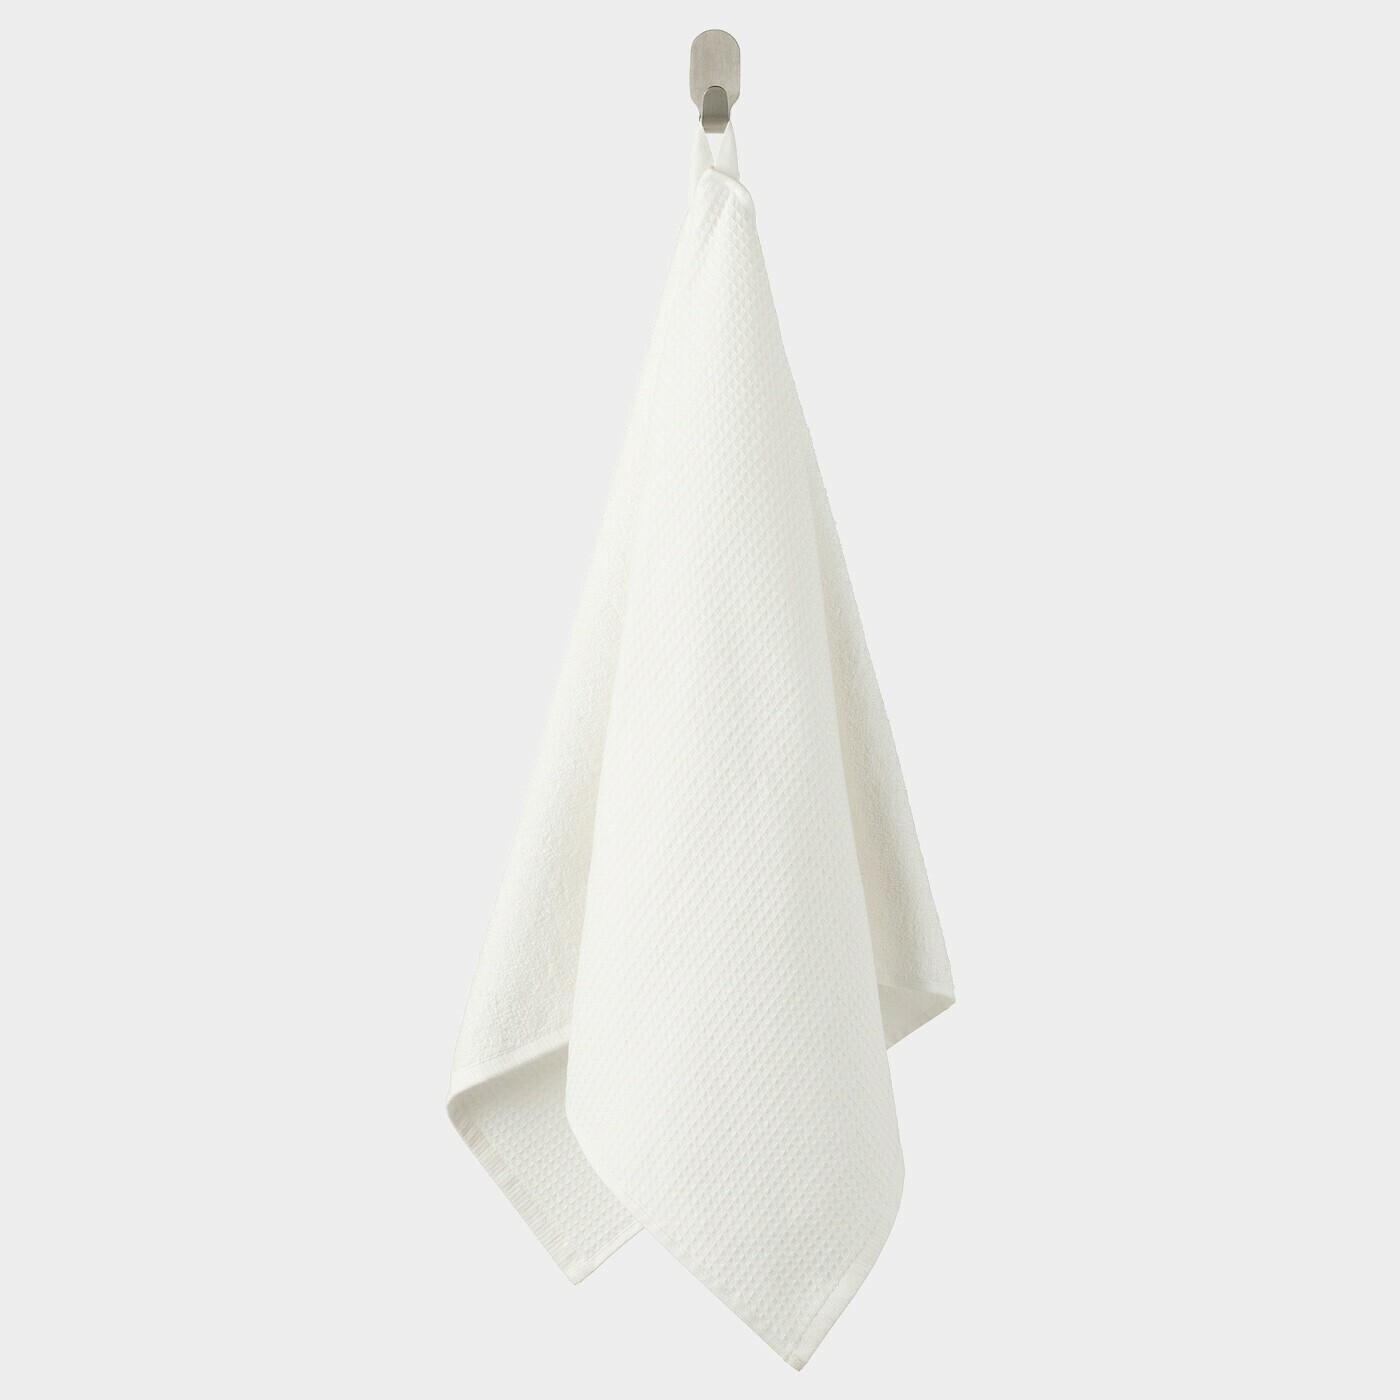 SALVIKEN Handtuch  - Handtücher - Textilien Ideen für dein Zuhause von Home Trends. Textilien Trends von Social Media Influencer für dein Skandi Zuhause.